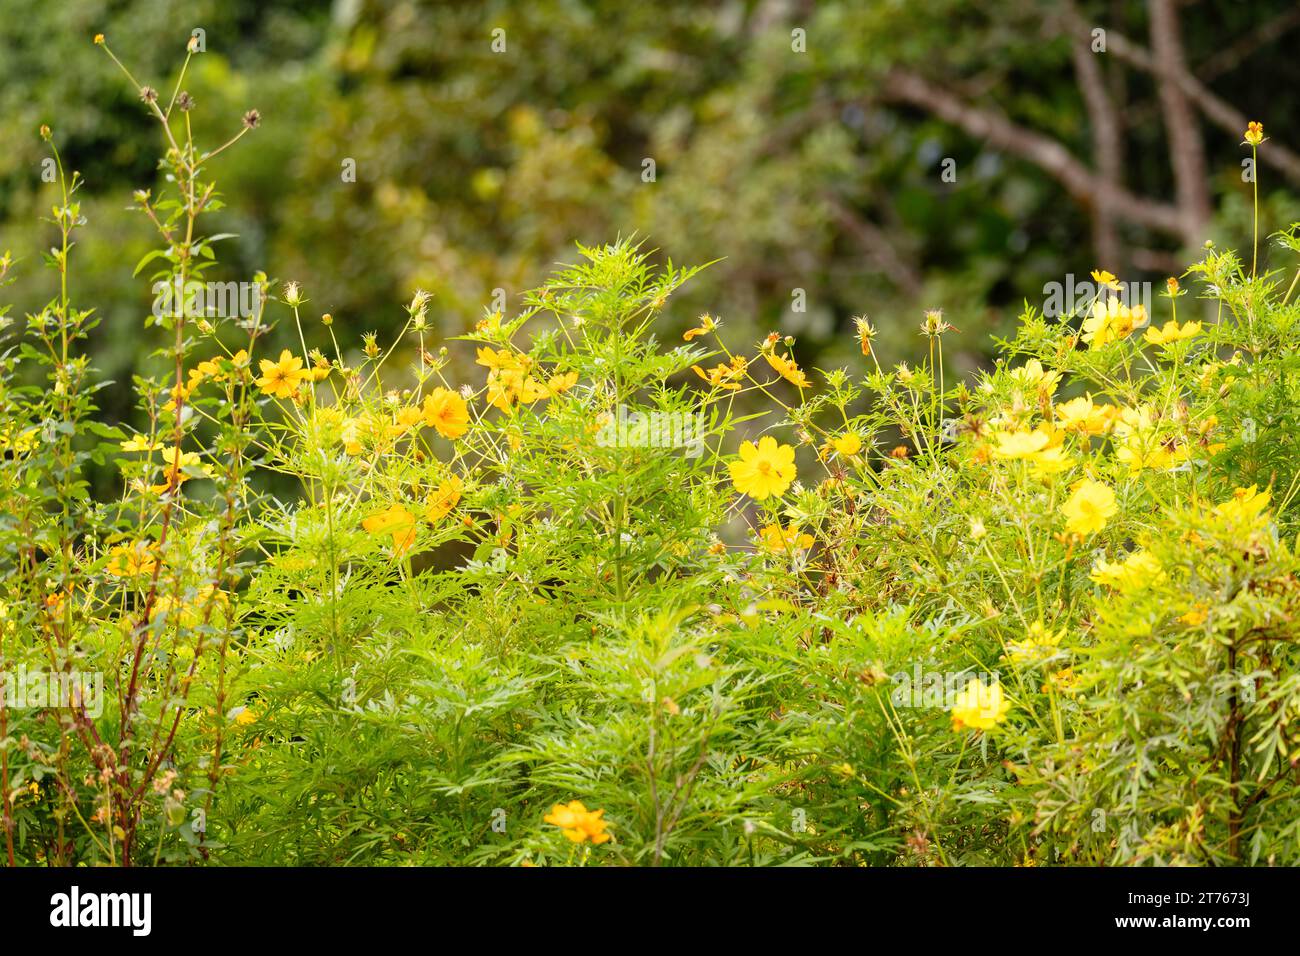 Frische gelbe Wildblumen blühen in einer grünen Landschaft Stockfoto